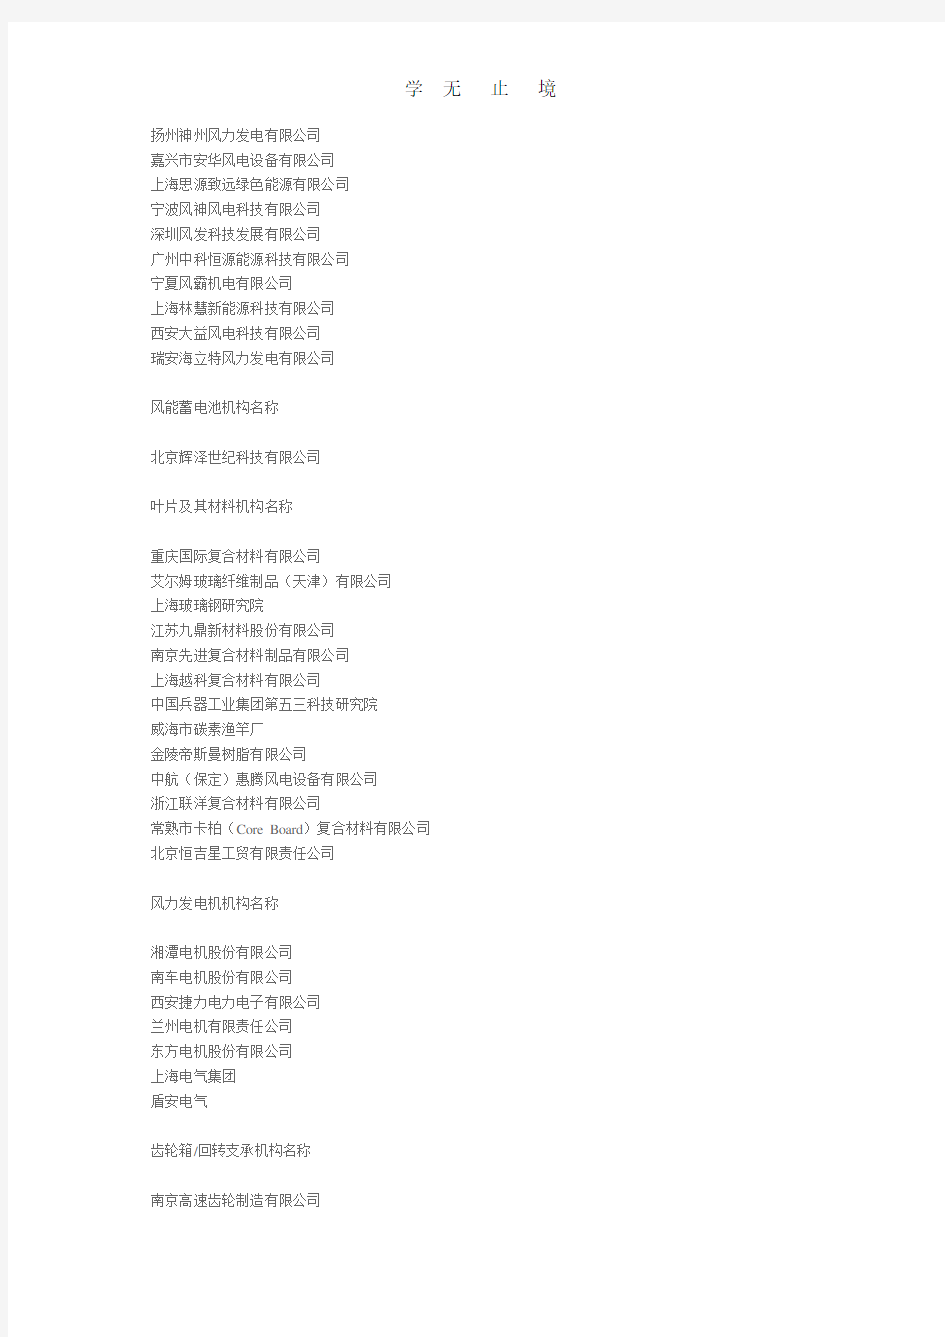 中国风电企业名单.doc